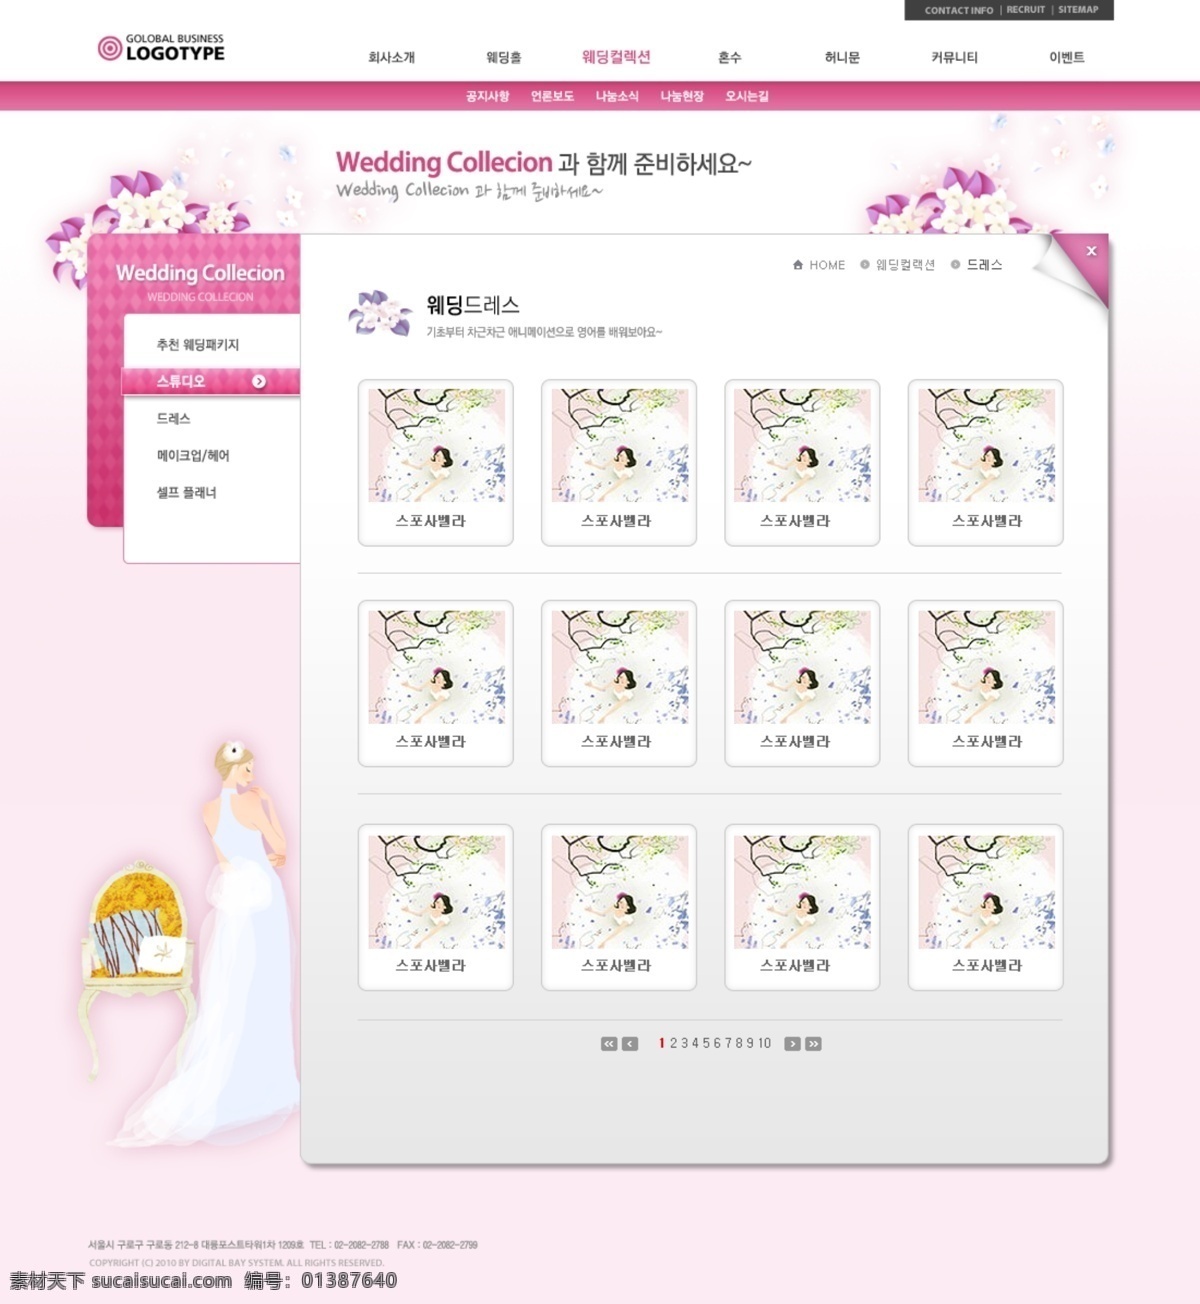 韩国 蜜月 婚纱 之旅 公司 网页模板 墼 禄 樯 粗 霉 衬 网页素材